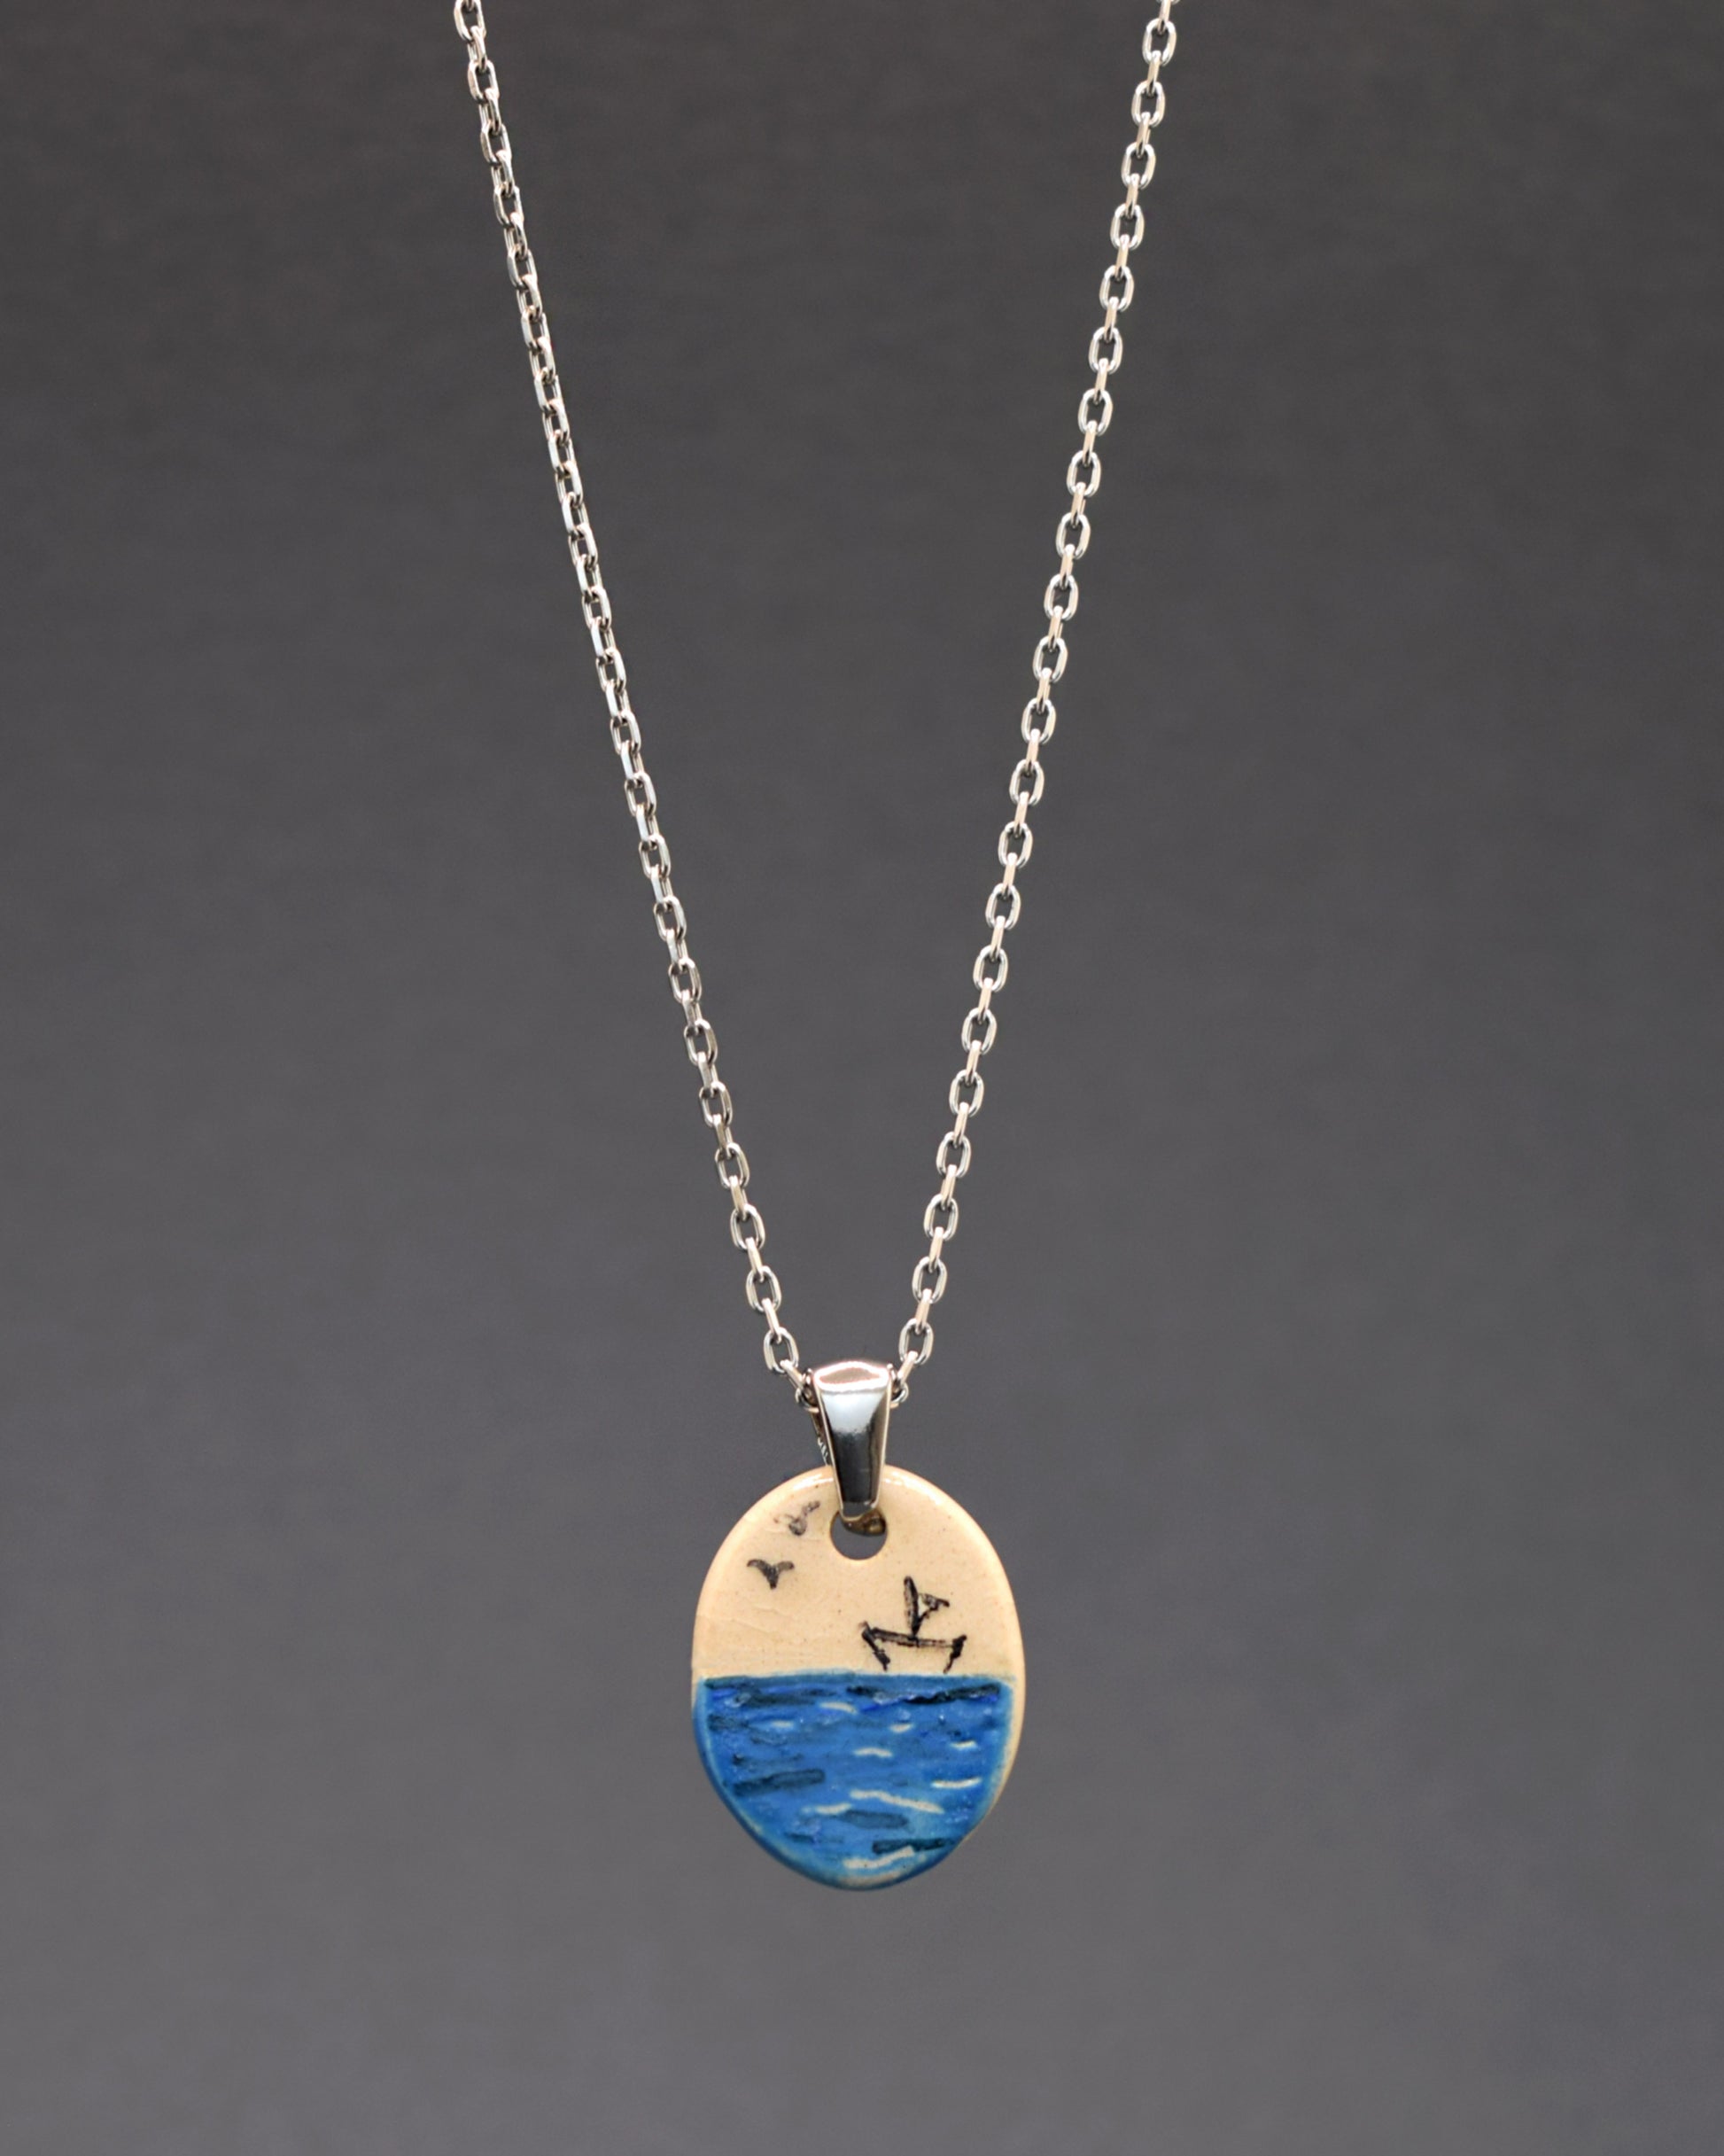 Um colar de aço inoxidável com um toque artístico. Destaca-se o pendente de cerâmica pintado à mão, retratando um barco de papel no mar. Uma fusão de elegância durável e arte delicada em uma única peça.